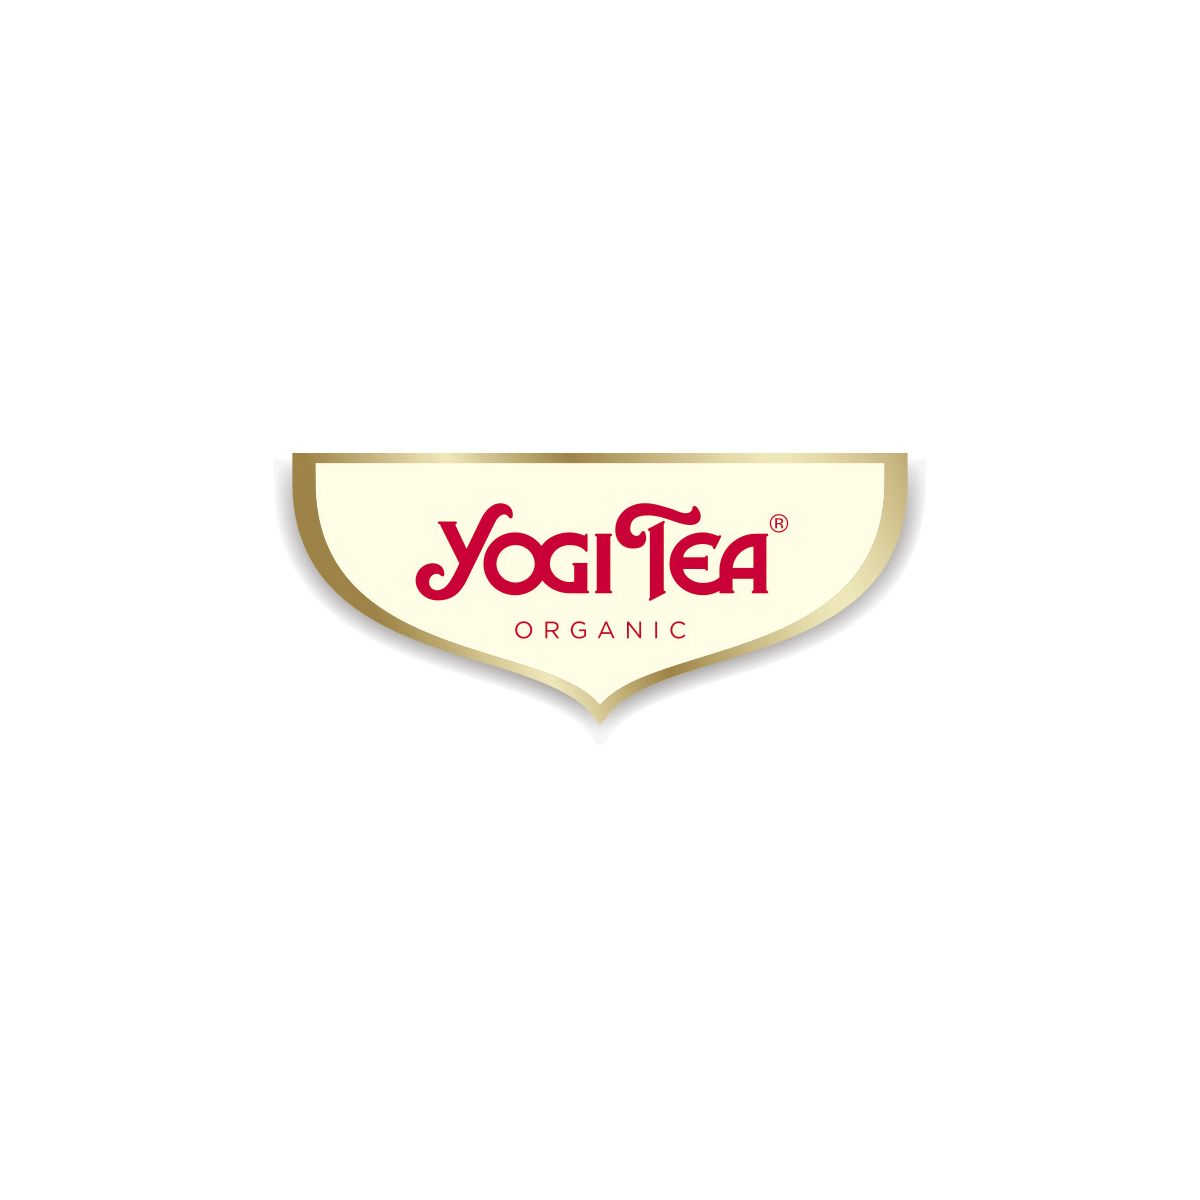  Yogi Tea - Grandiose Teekreationen aus aller...